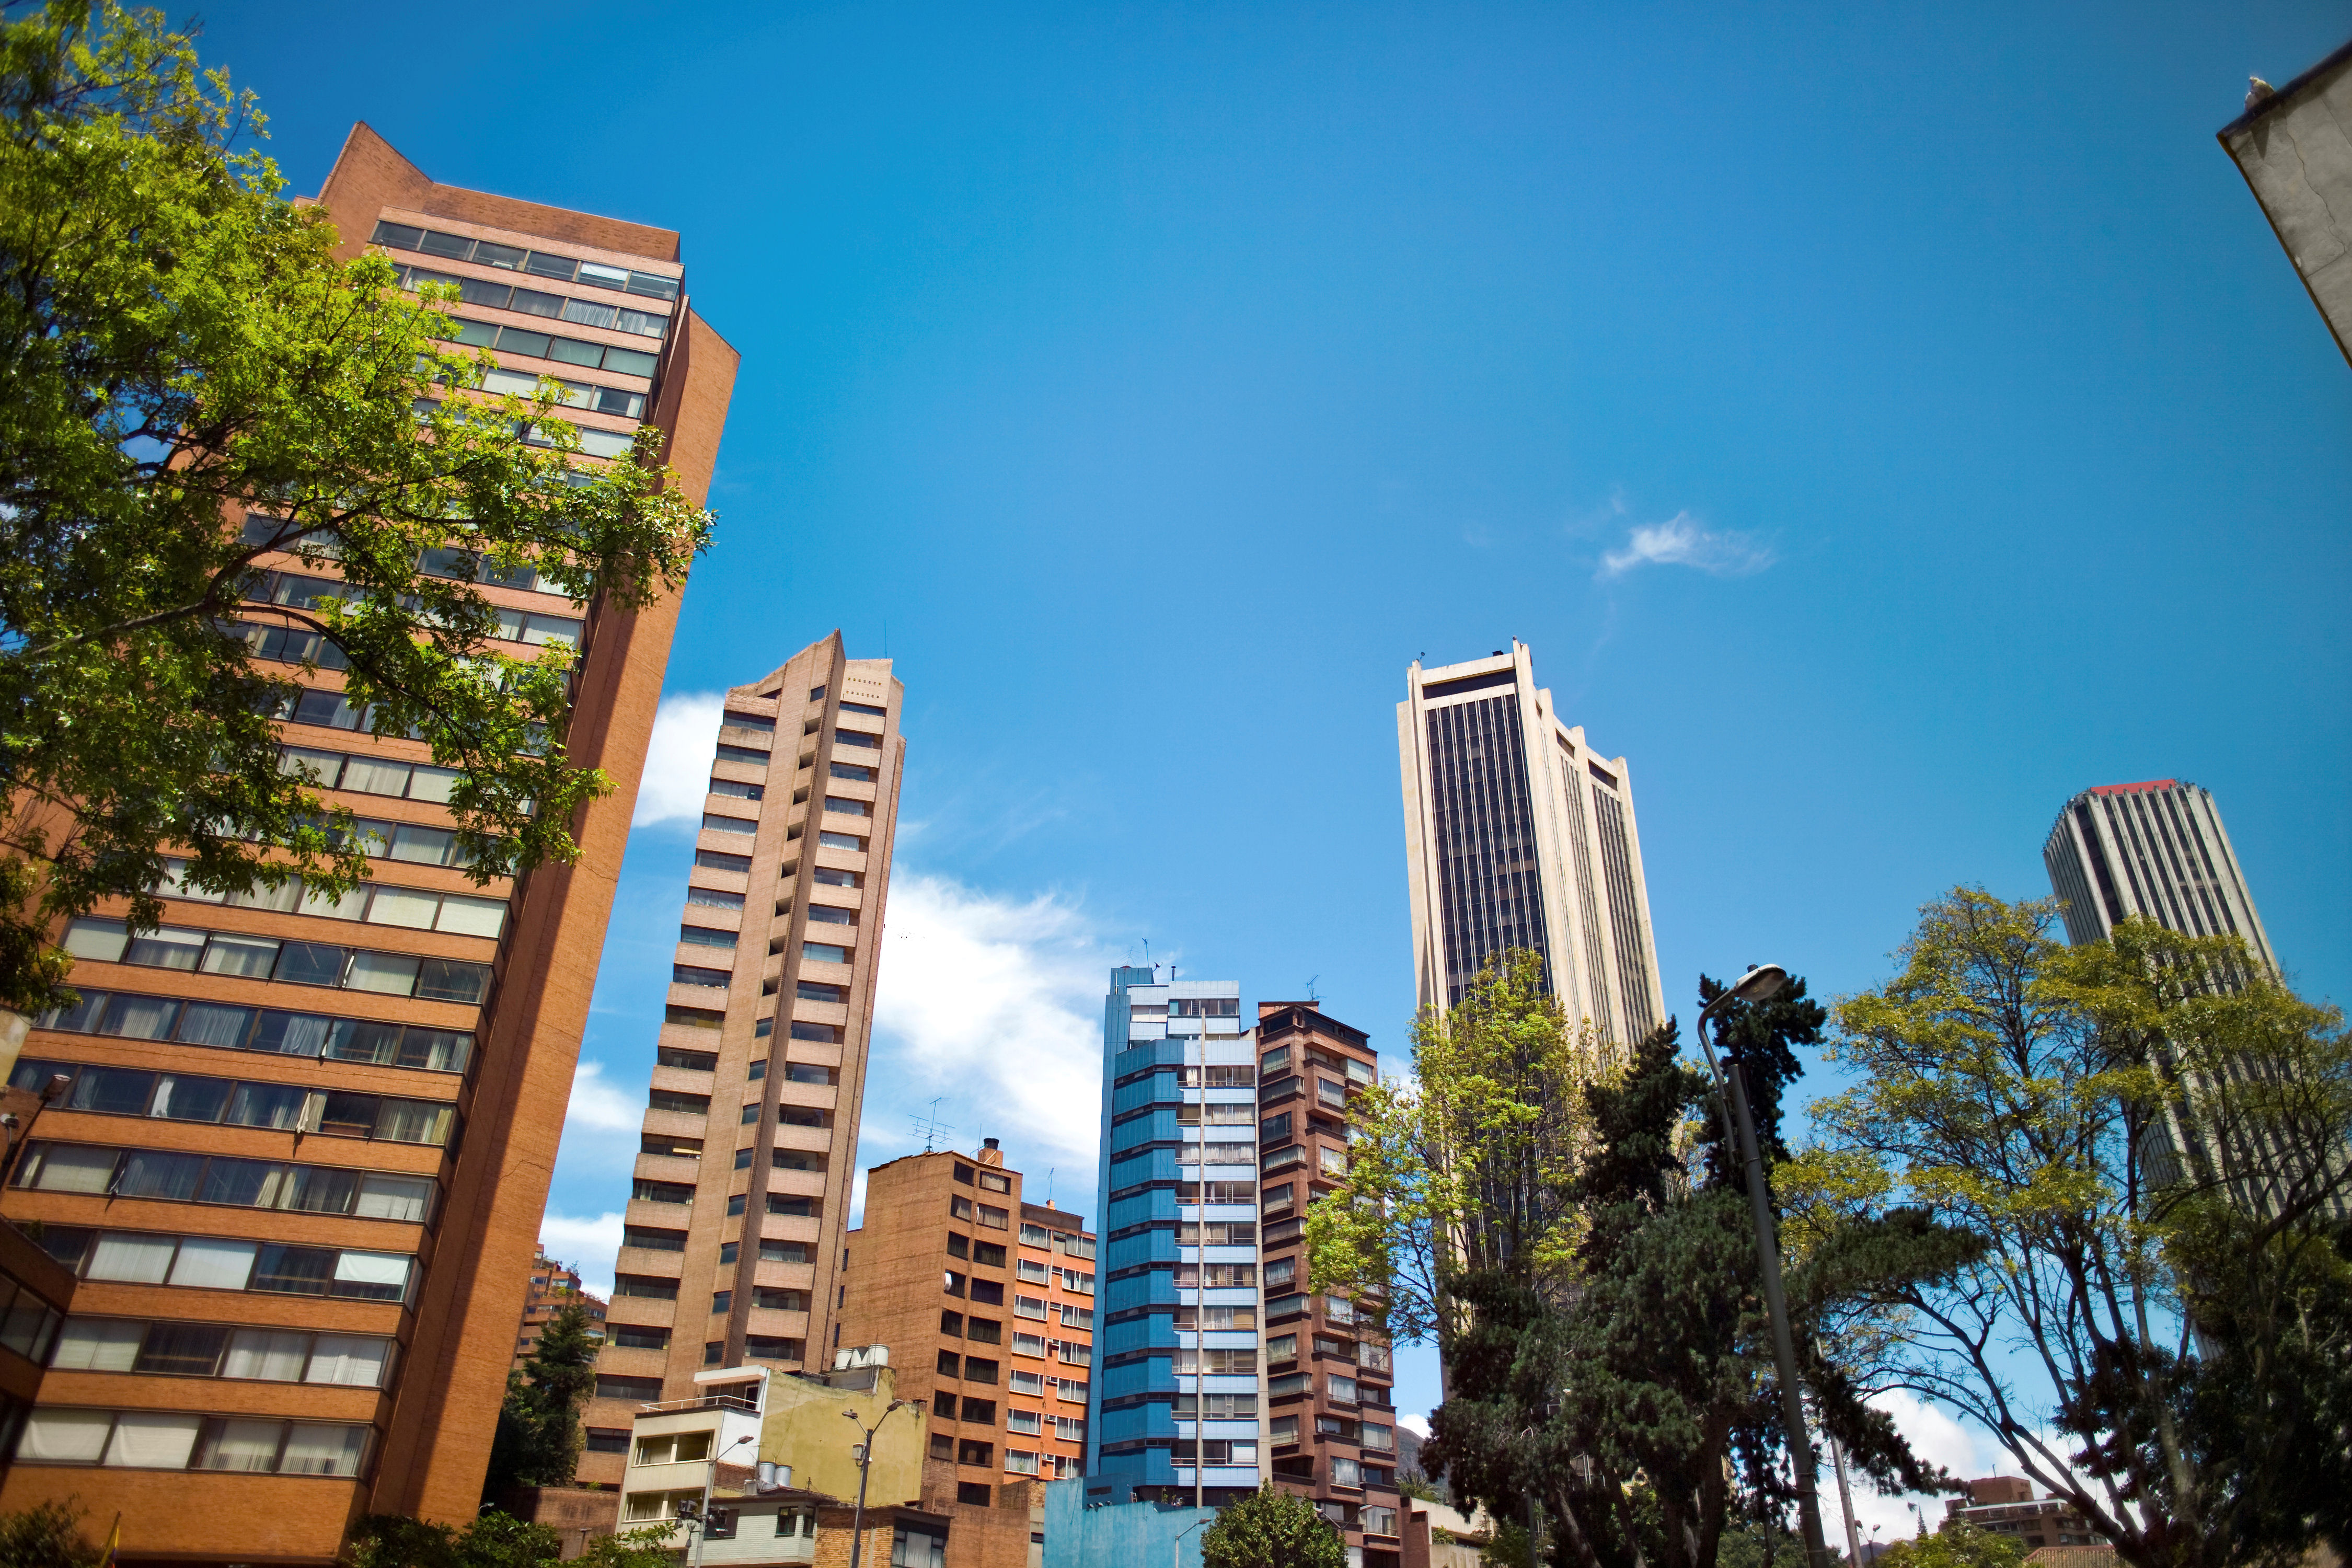 Blue skies in Bogota, Colombia